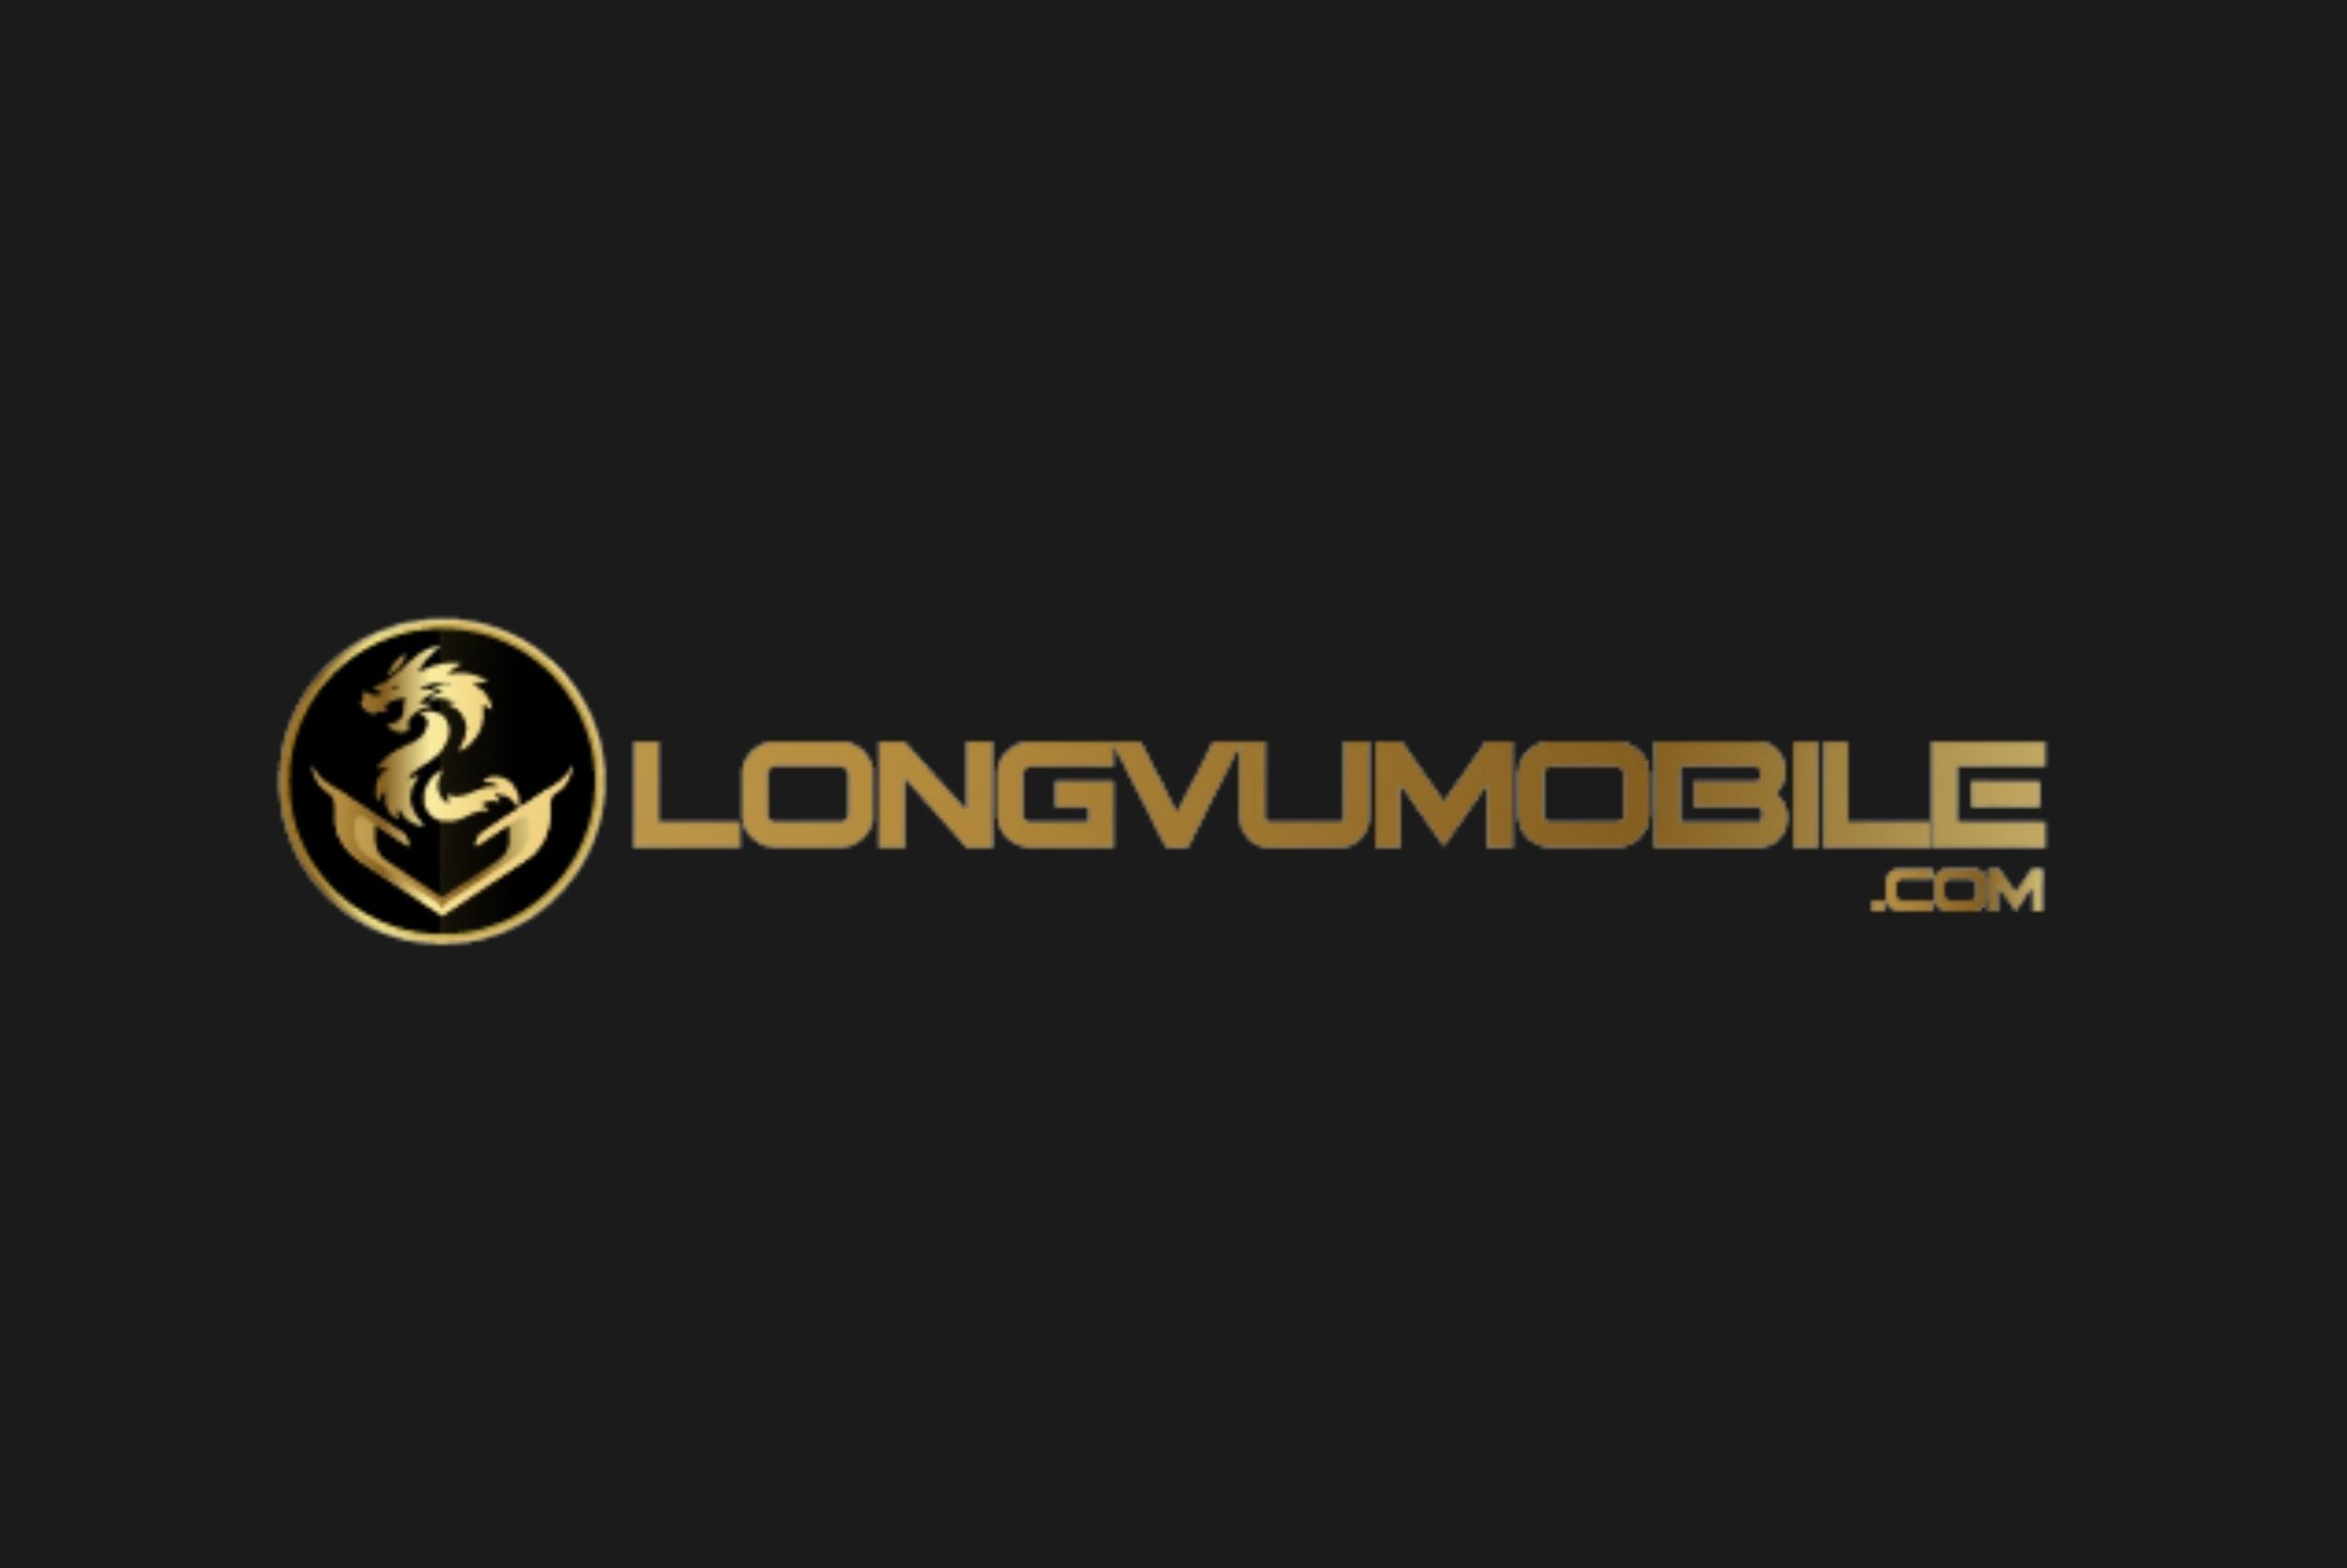 long-vu-mobile-logo